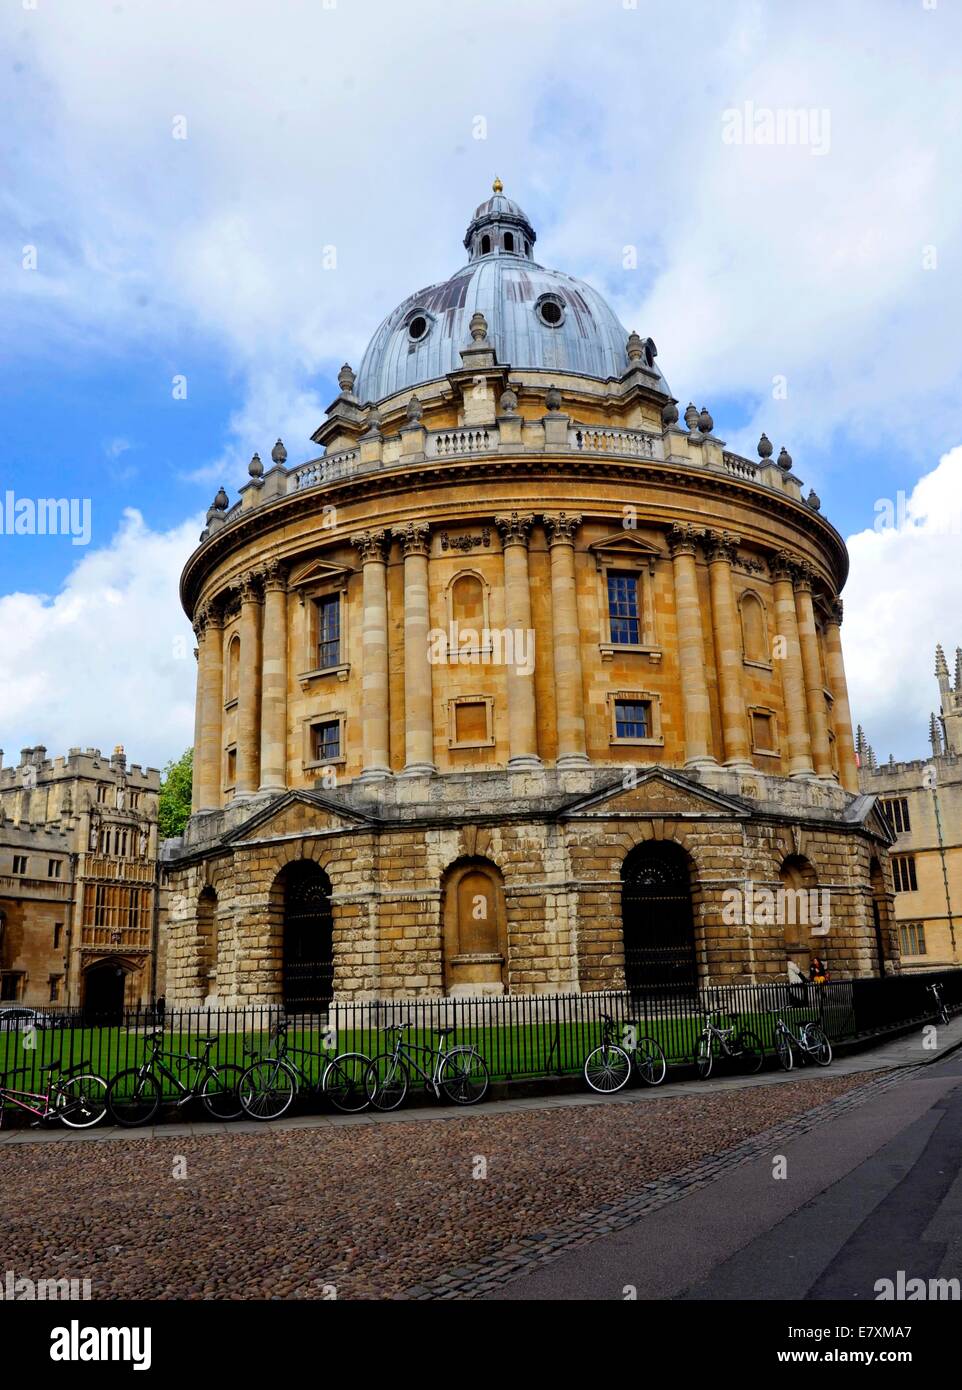 die Radcliffe Camera ist ein Gebäude in Oxford, England, von James Gibbs in der englischen Palladio-Stil entworfen und gebaut im Jahre 1737 – Stockfoto